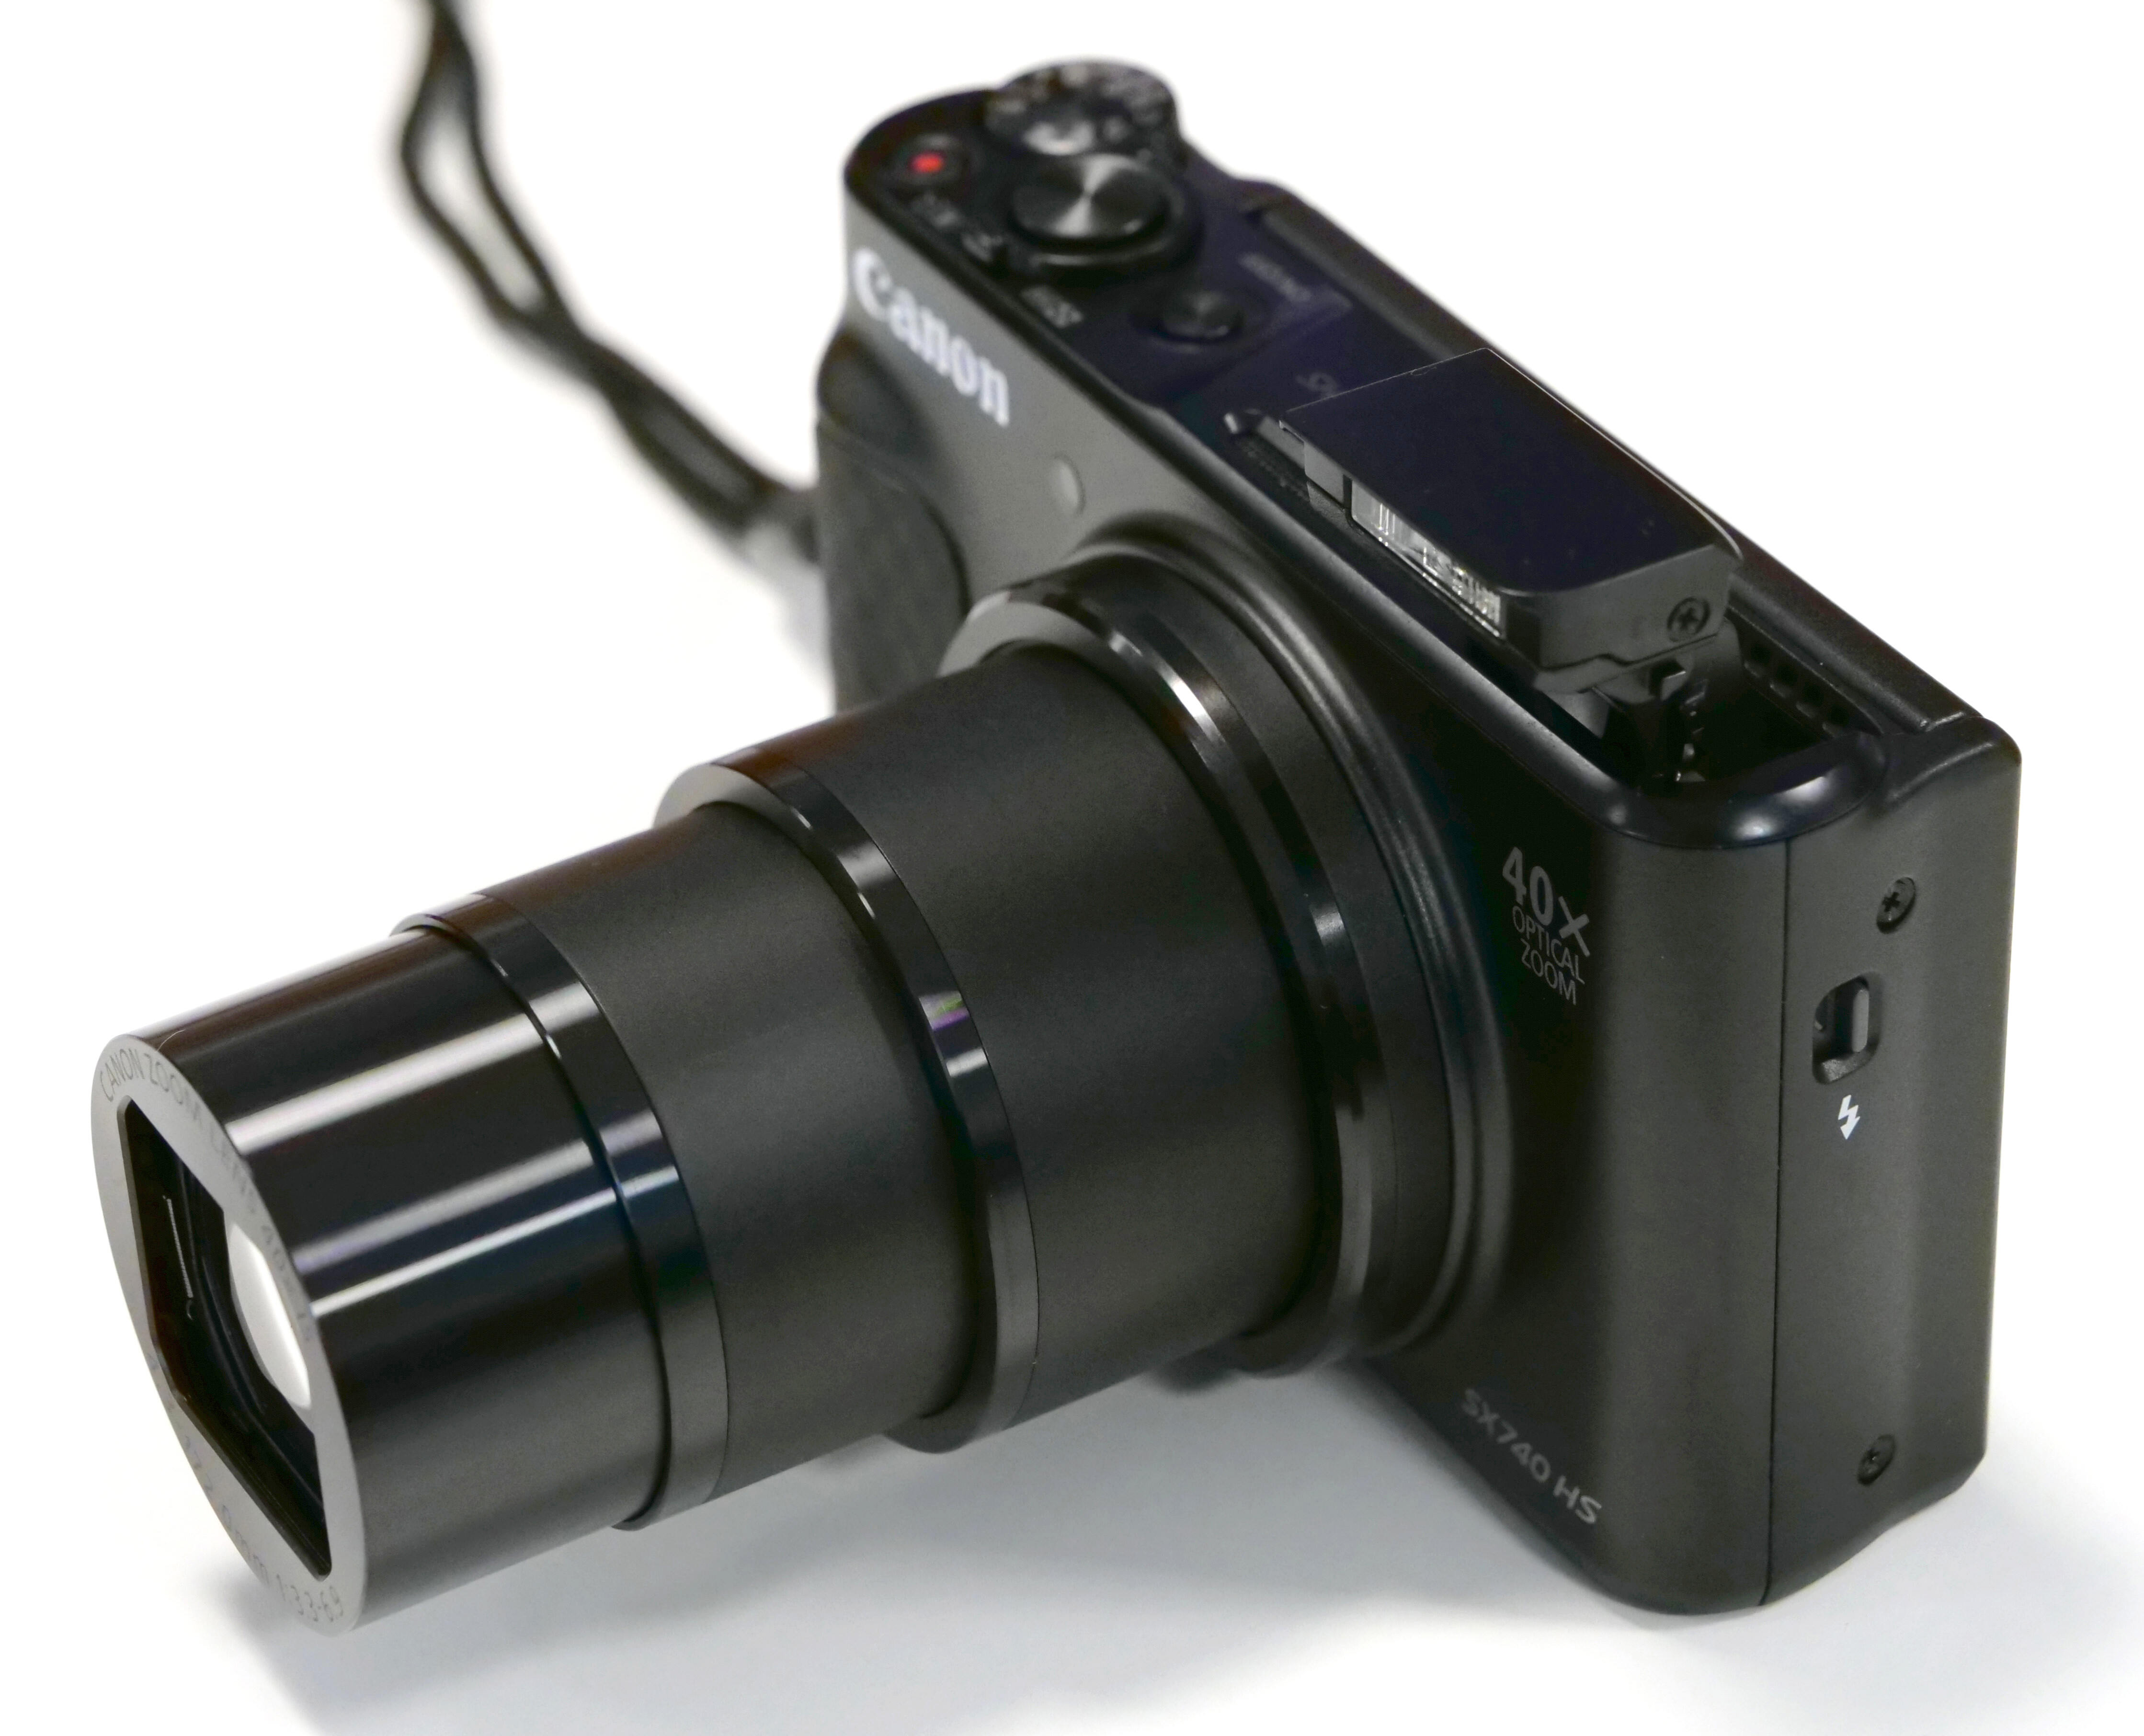 Canon Powershot SX740 HS Review